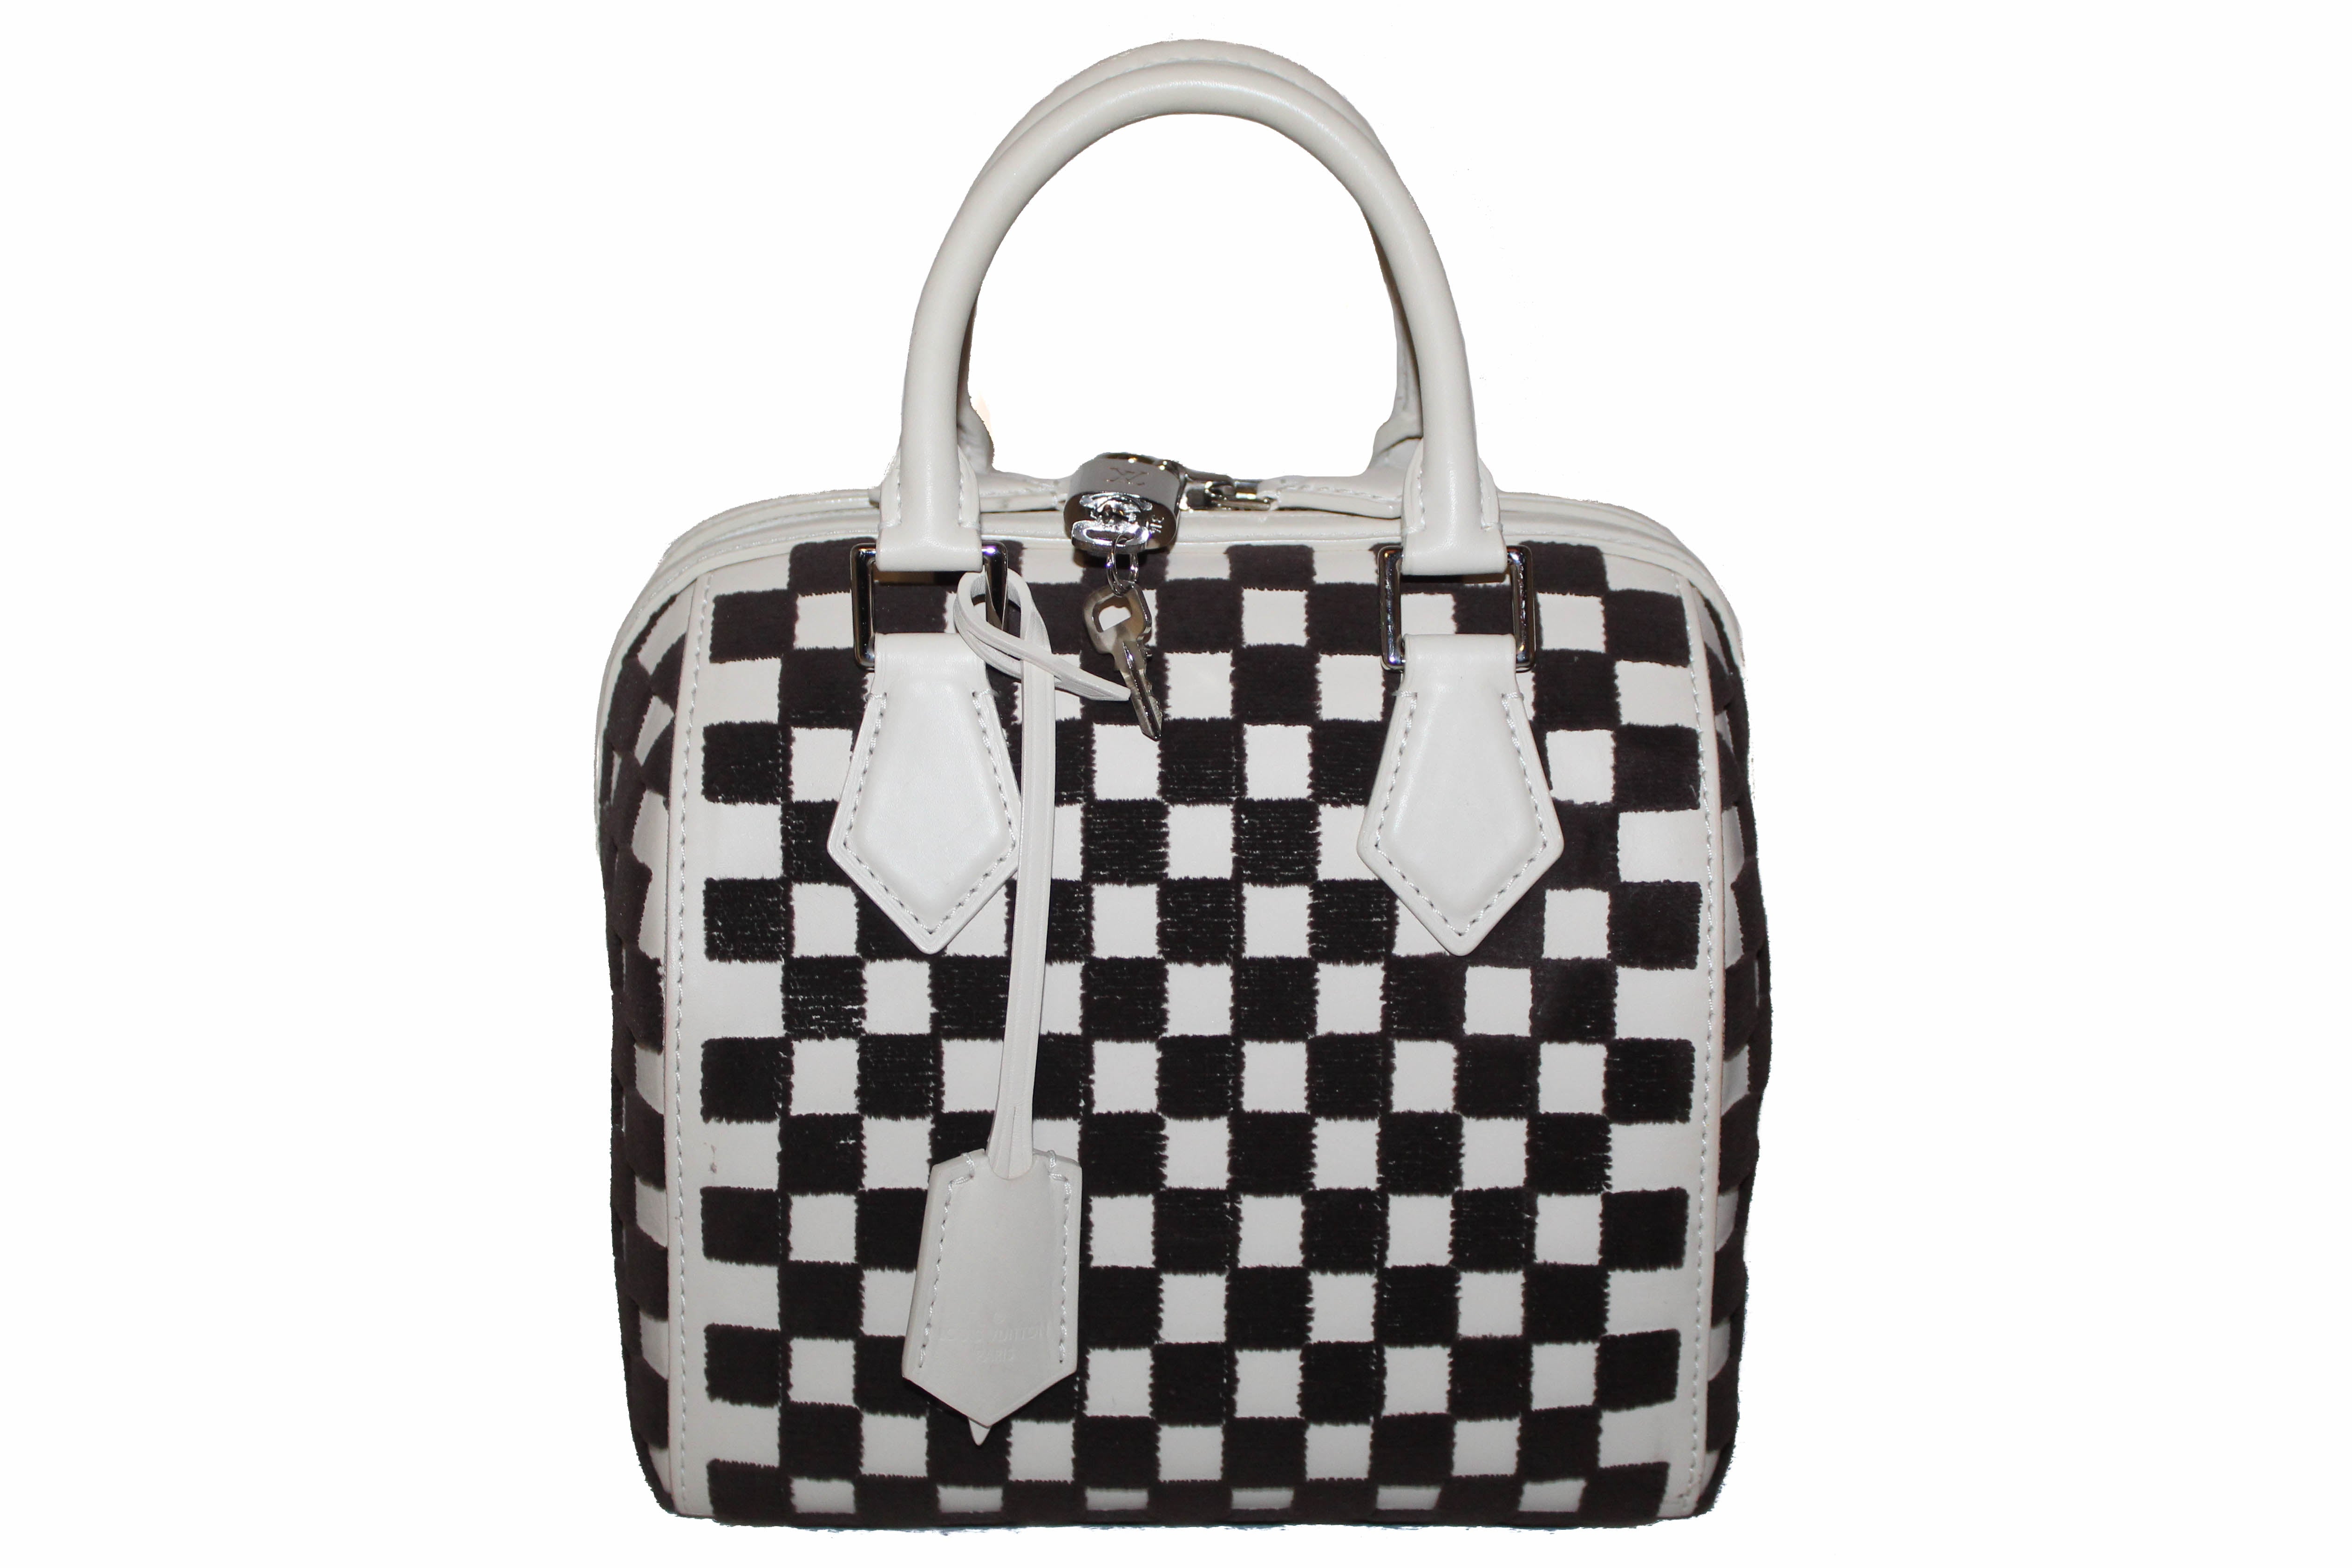 Authentic Louis Vuitton Limited Edition Cube Speedy 25 Handbag – Paris  Station Shop